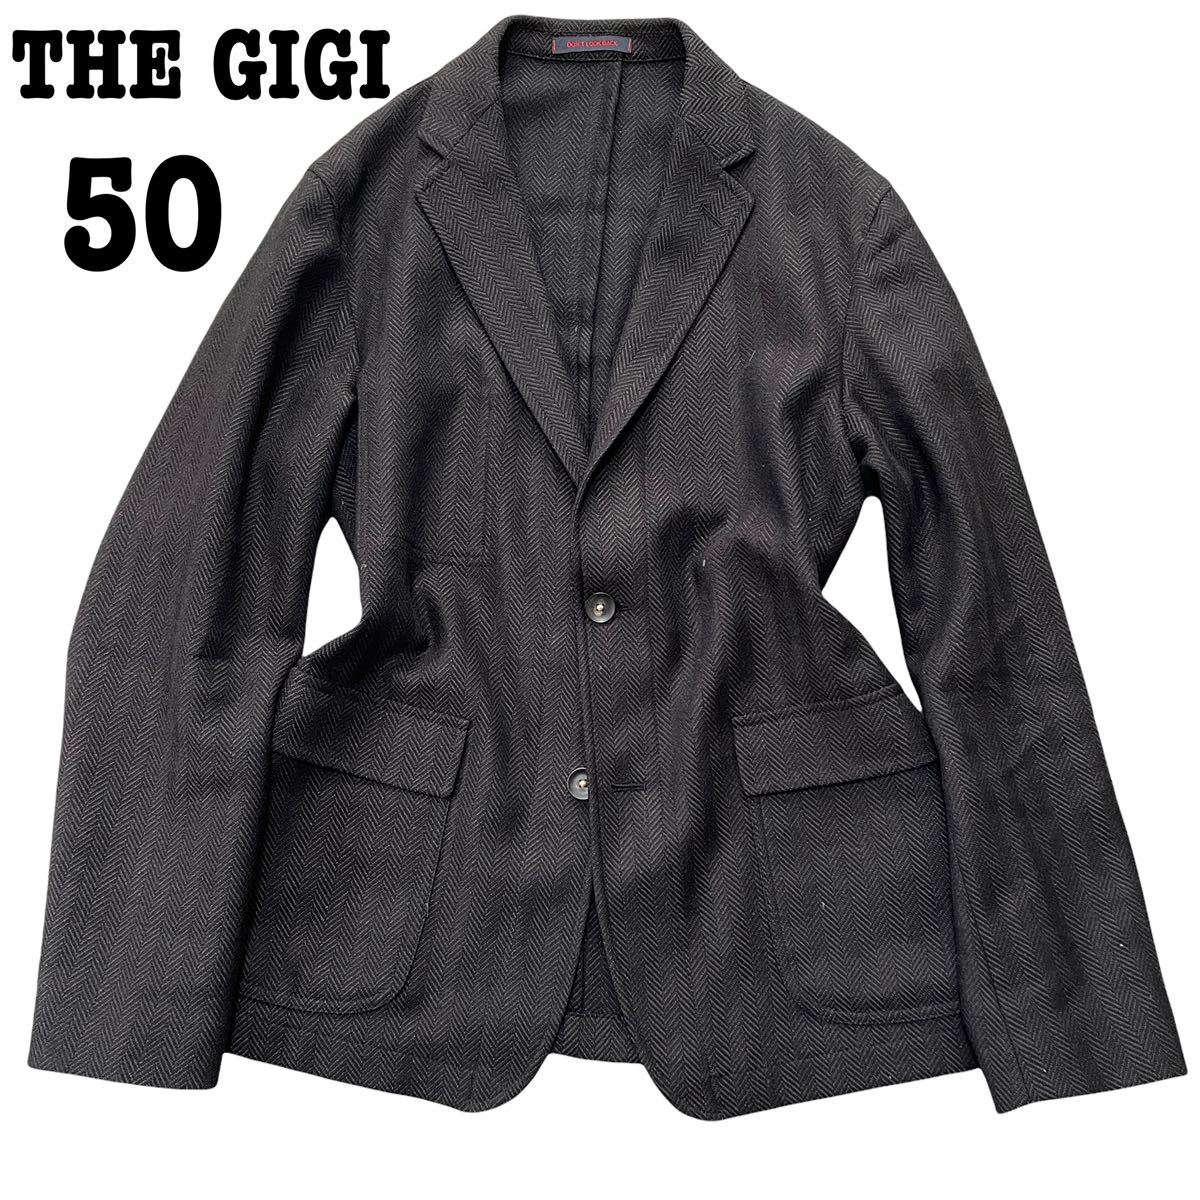 THE GIGI / ザ ジジ『大人のお洒落』 カジュアルジャケット 50 L